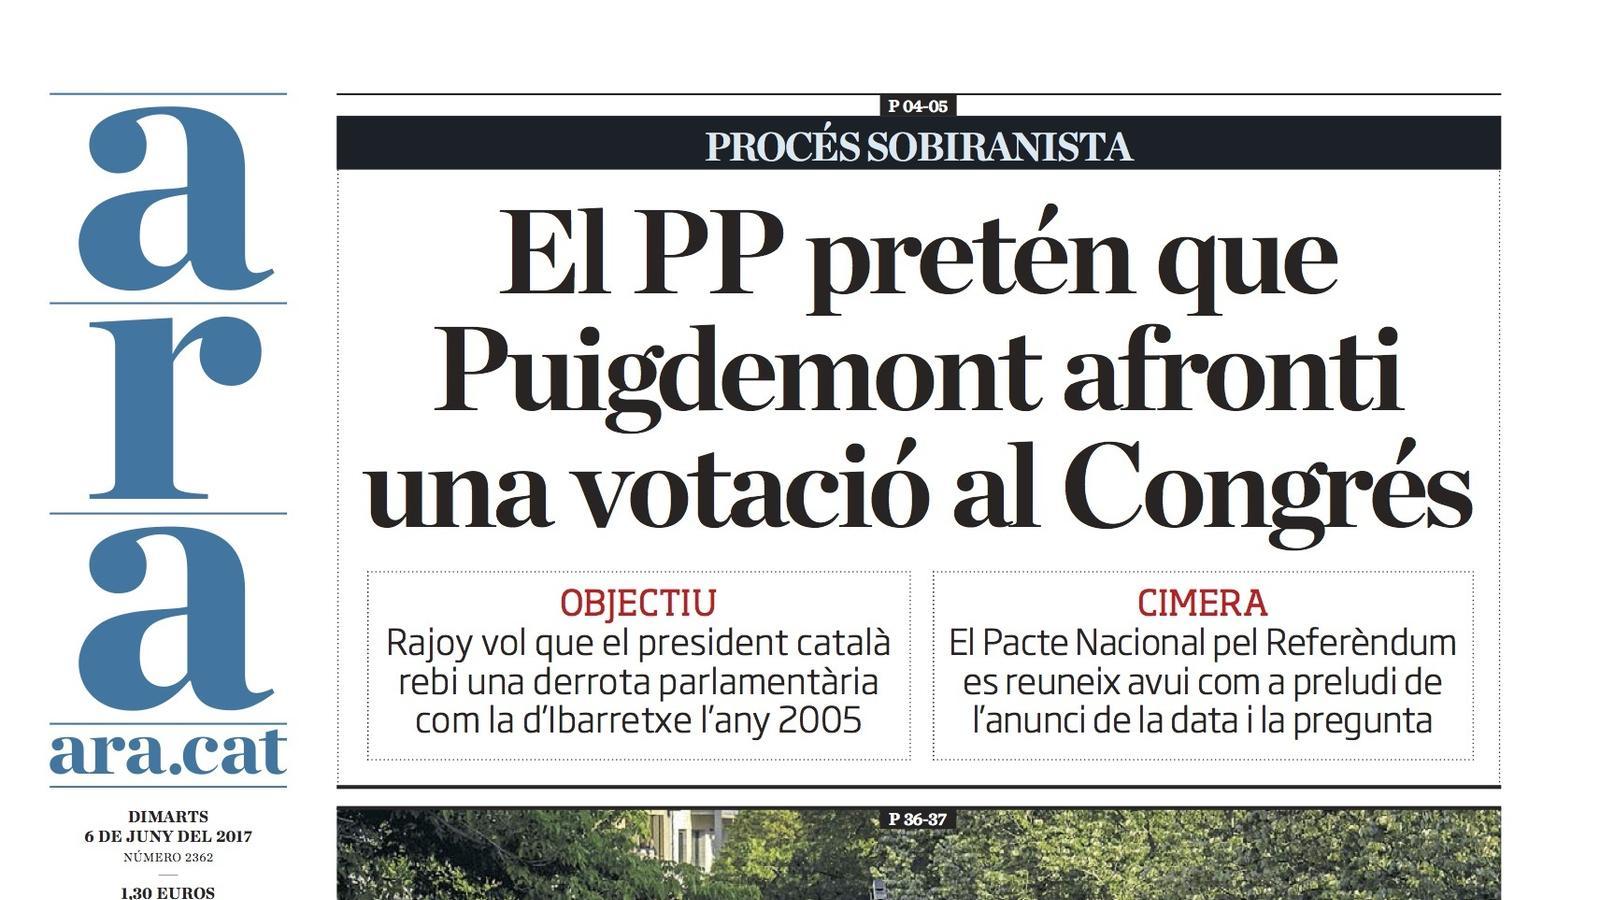 "El PP pretén que Puigdemont afronti una votació al Congrés", portada de l'ARA